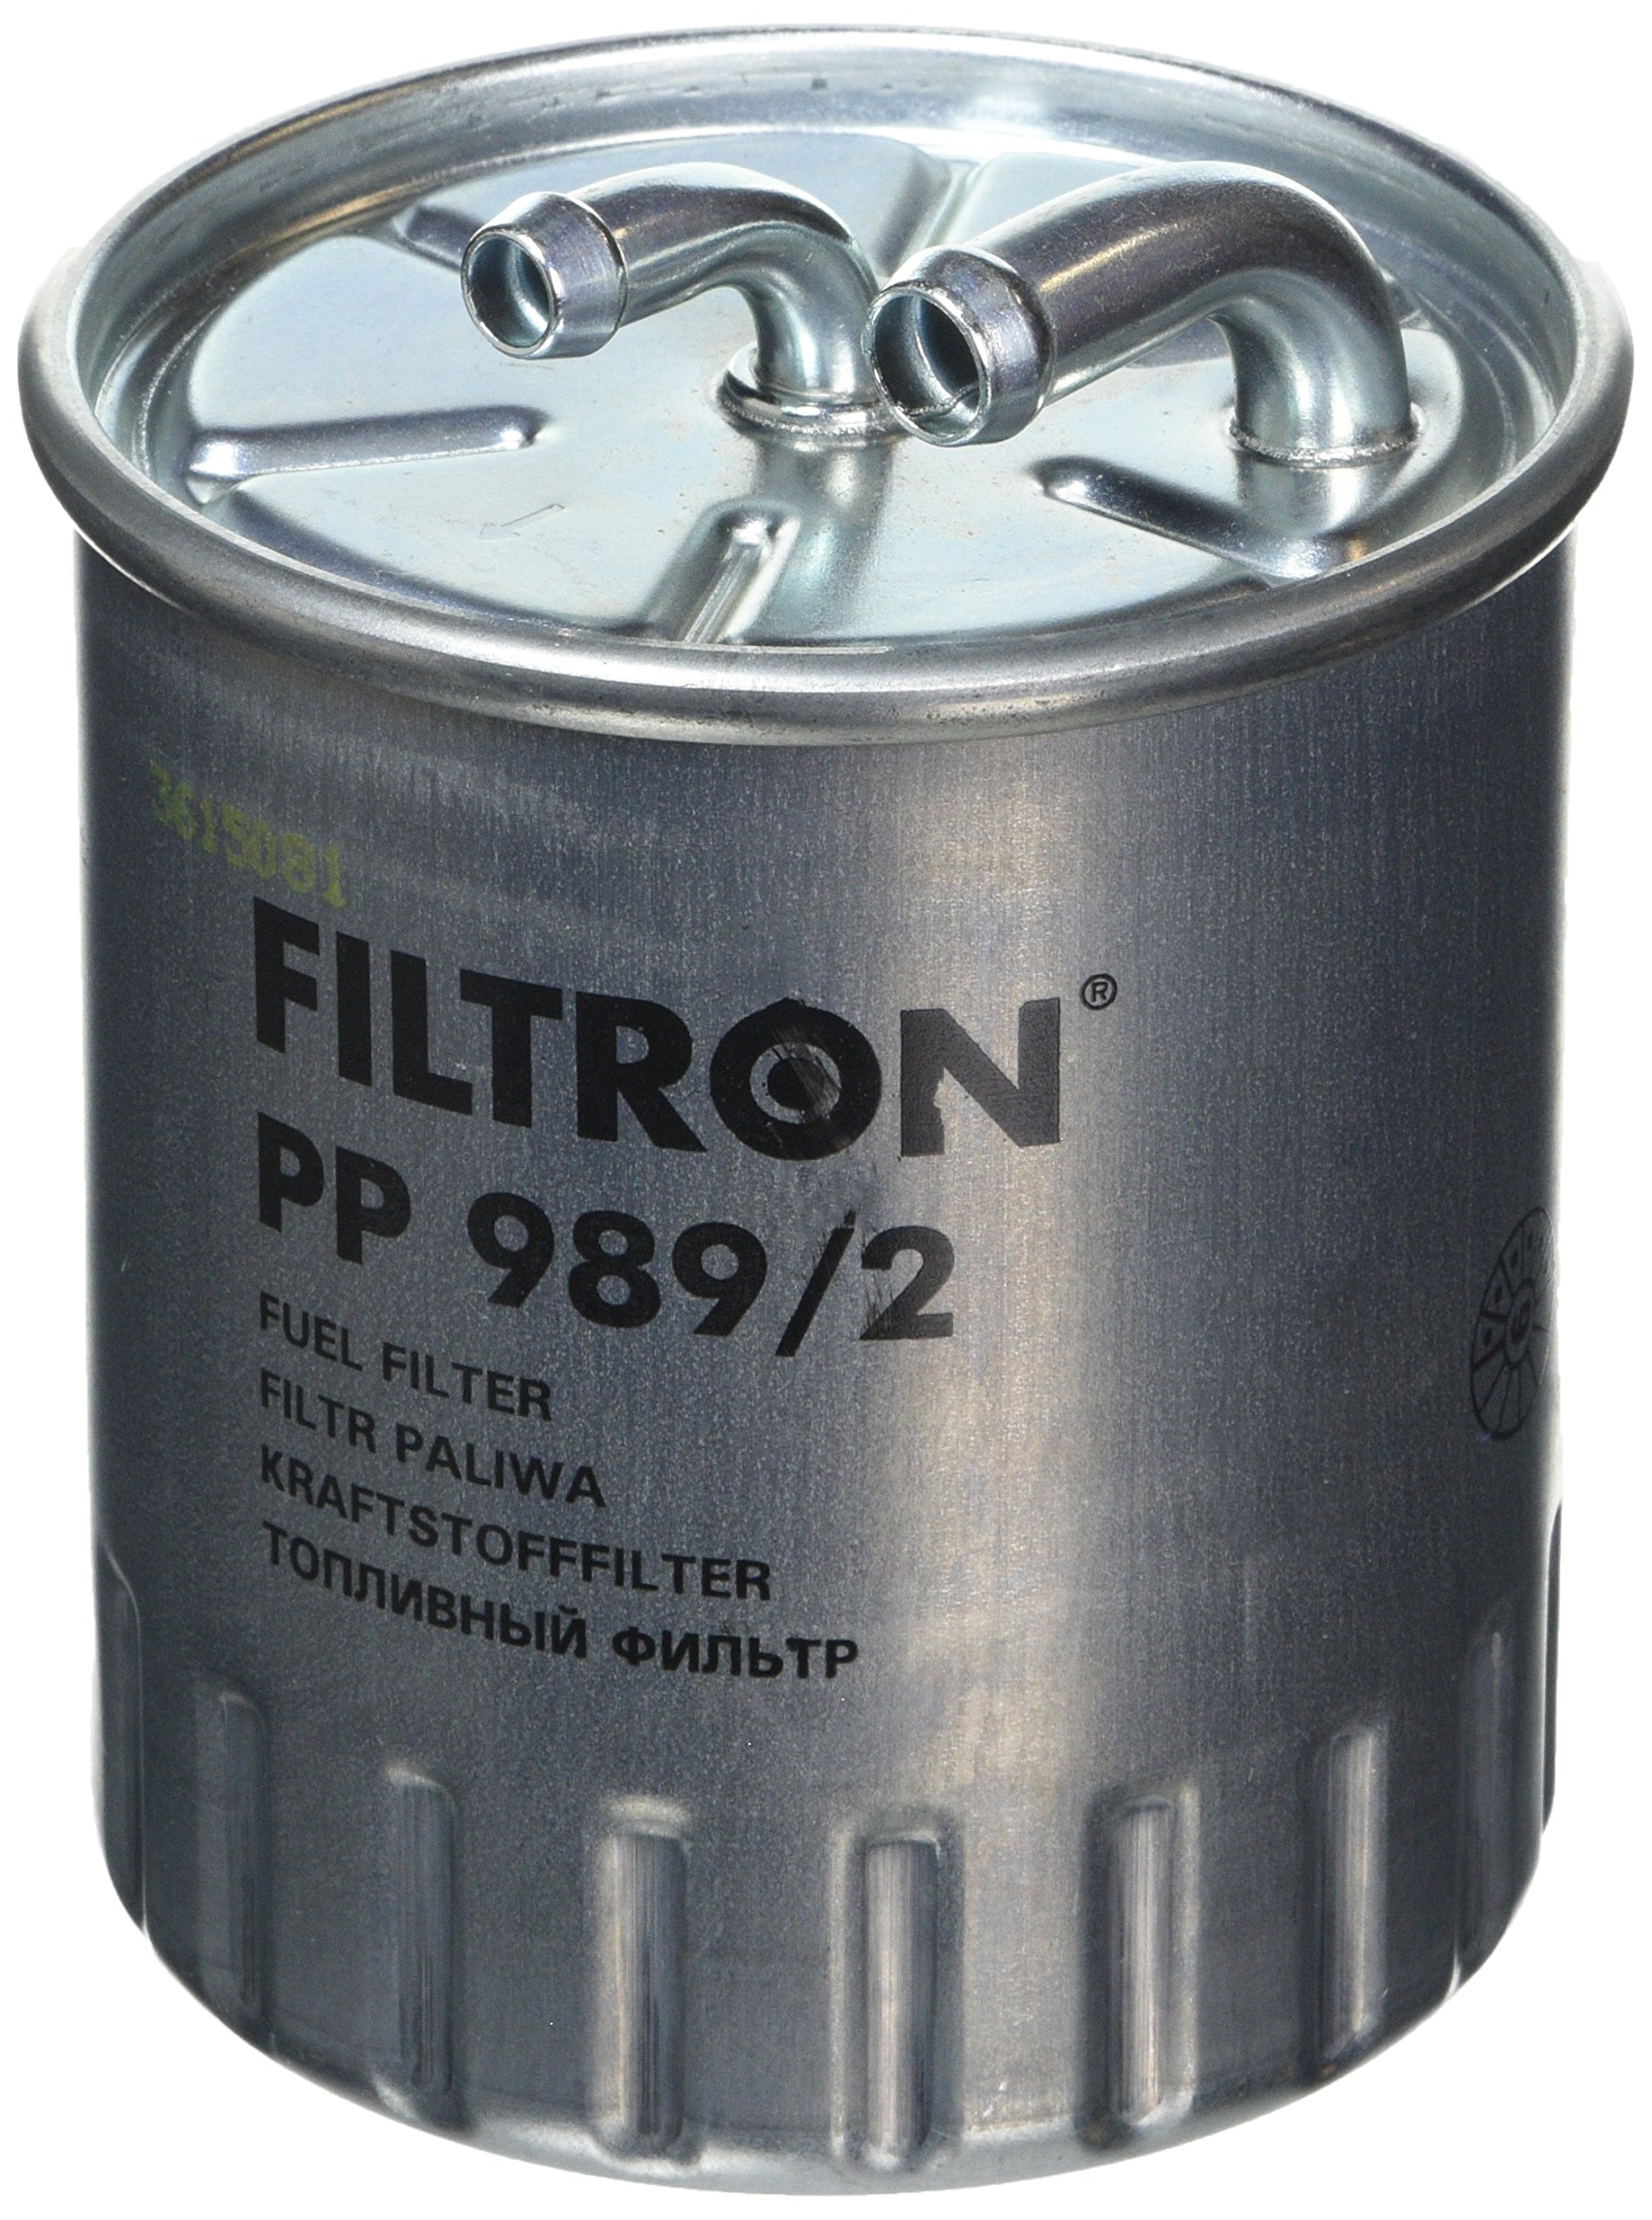 FILTRON PP989/2 Einspritzanlage von FILTRON